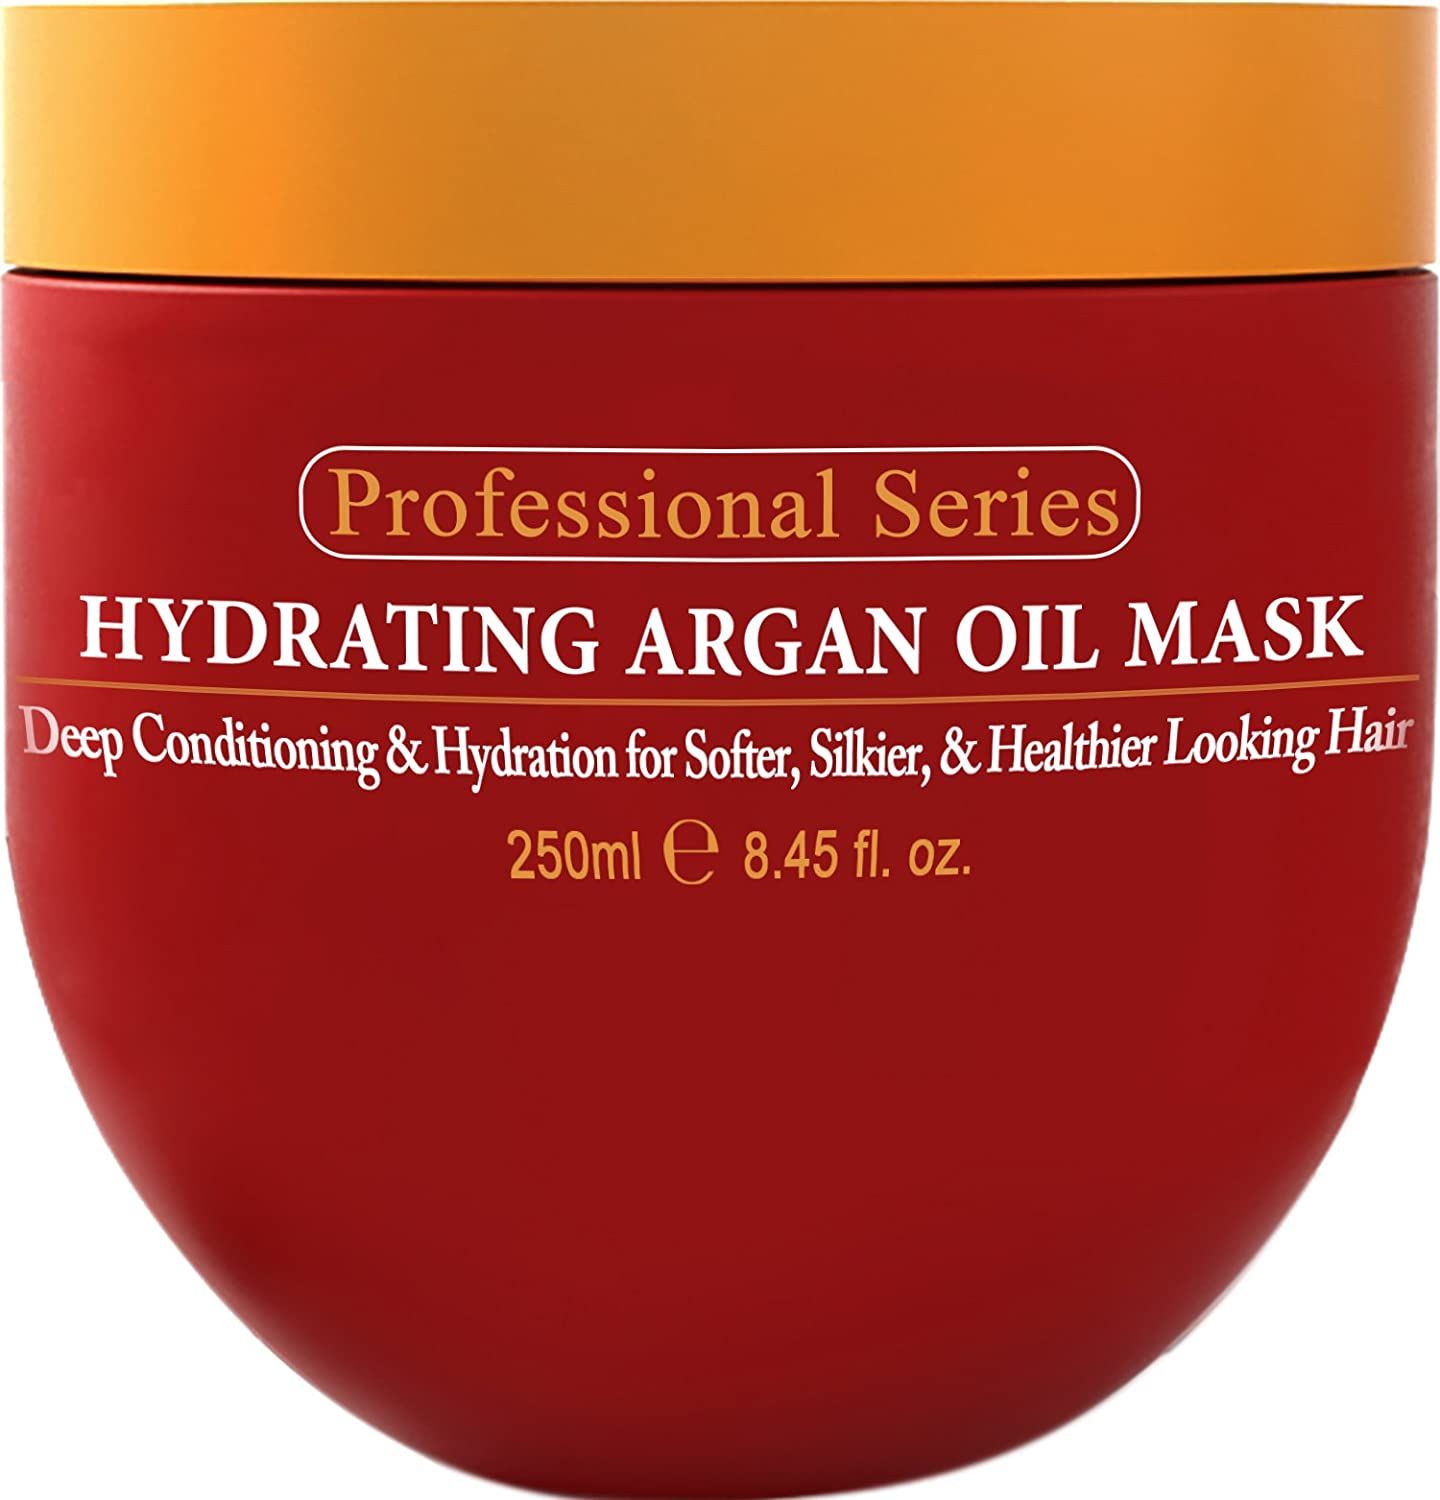 Moroccan Argan профессионал маска для волос. Argan Oil маска. Маска с аргановым маслом. Маска для волос с аргановым маслом.